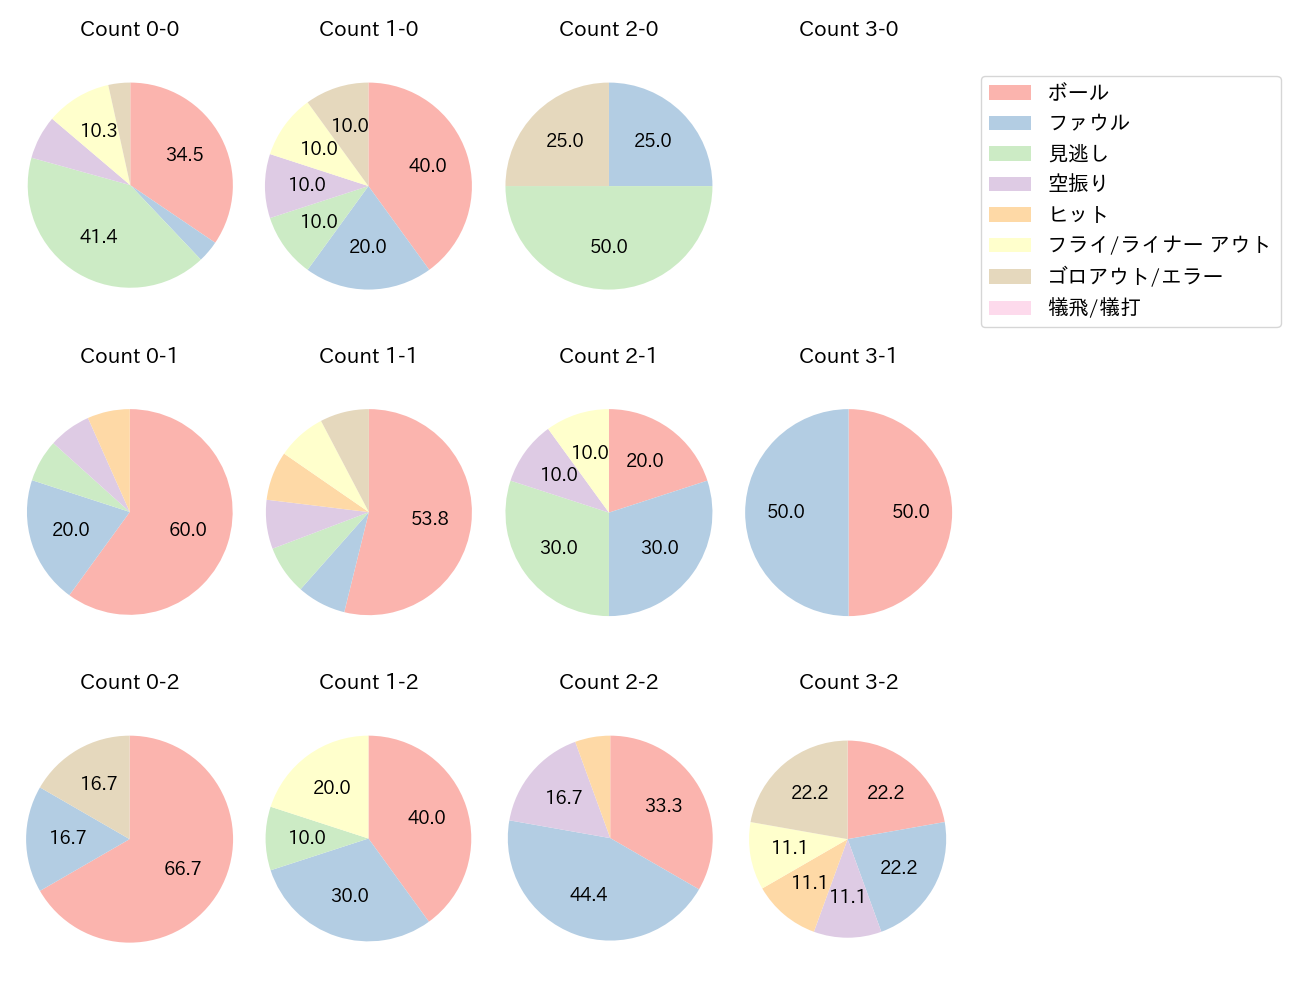 中山 礼都の球数分布(2022年7月)